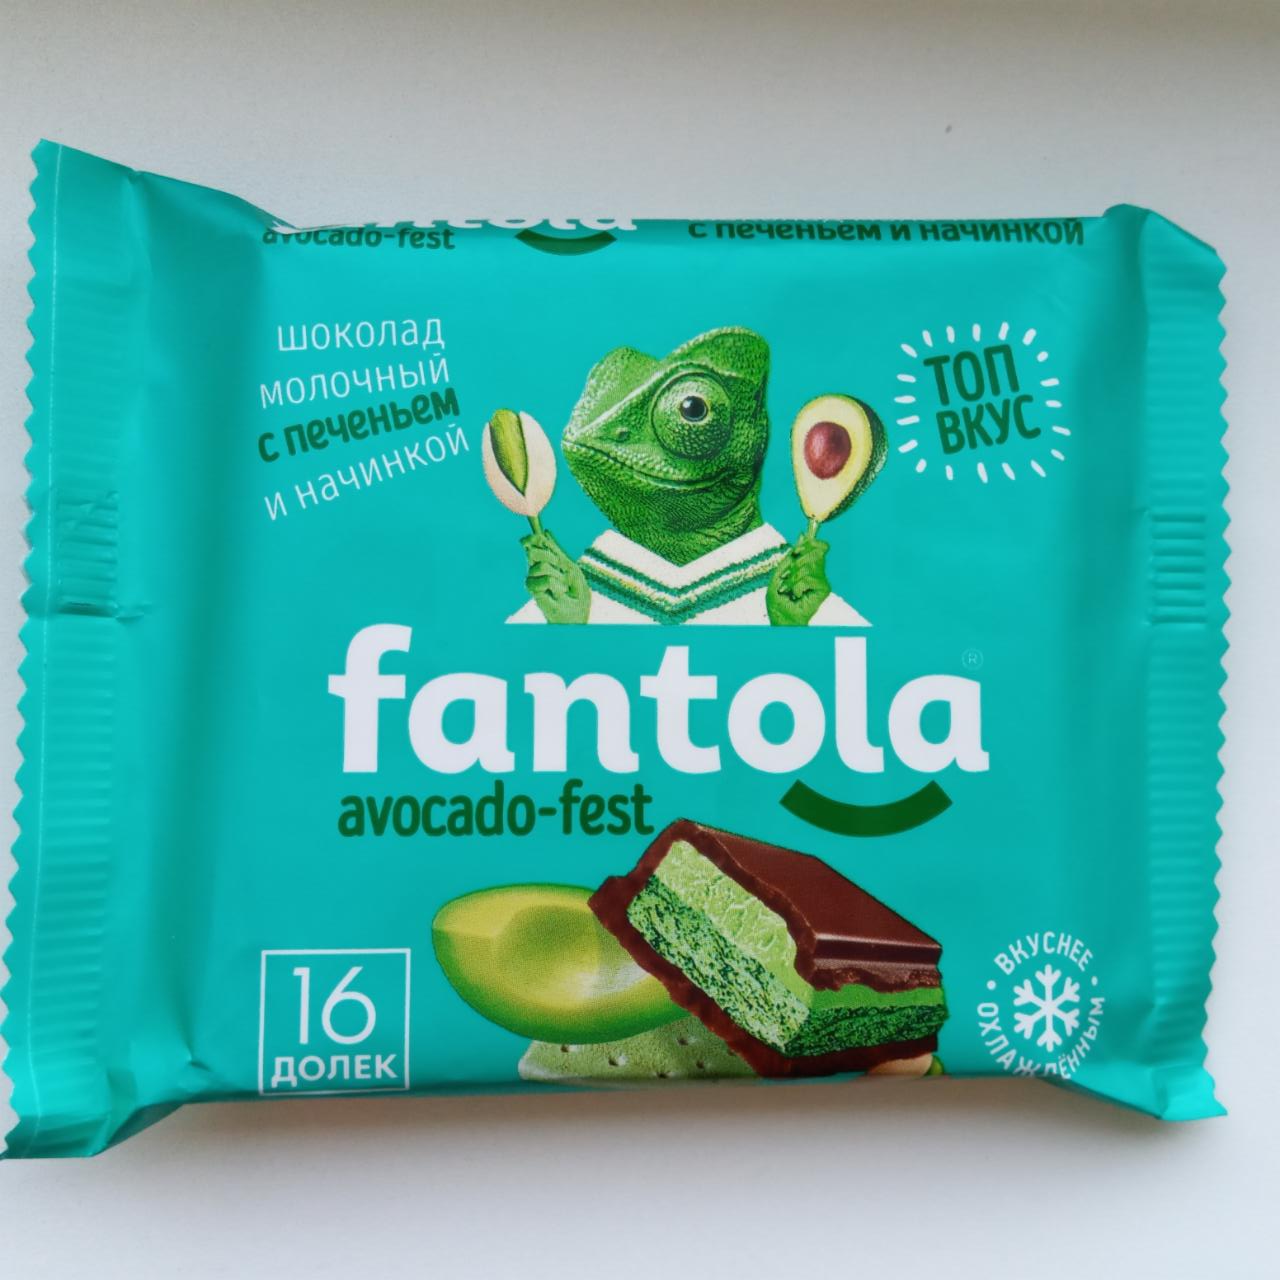 Фото - Шоколад Avocado fest молочный с печеньем Fantola